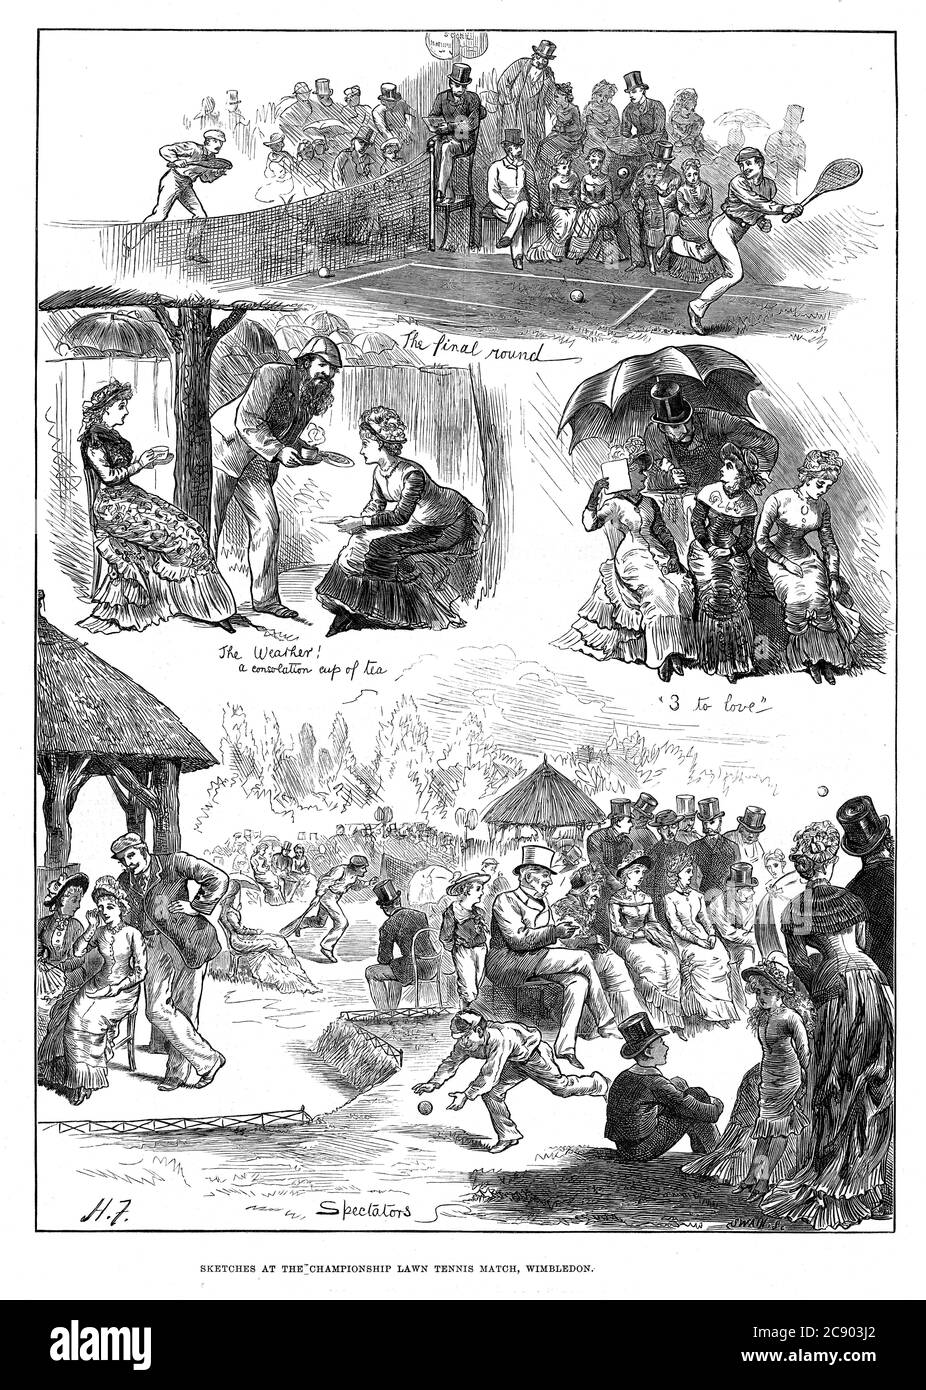 Wimbledon Tennis, 1879 bocetos en el tercer Campeonato de Wimbledon, con lluvia, té, diversión y juegos en todo el mundo, el campeón es John Hartley Foto de stock